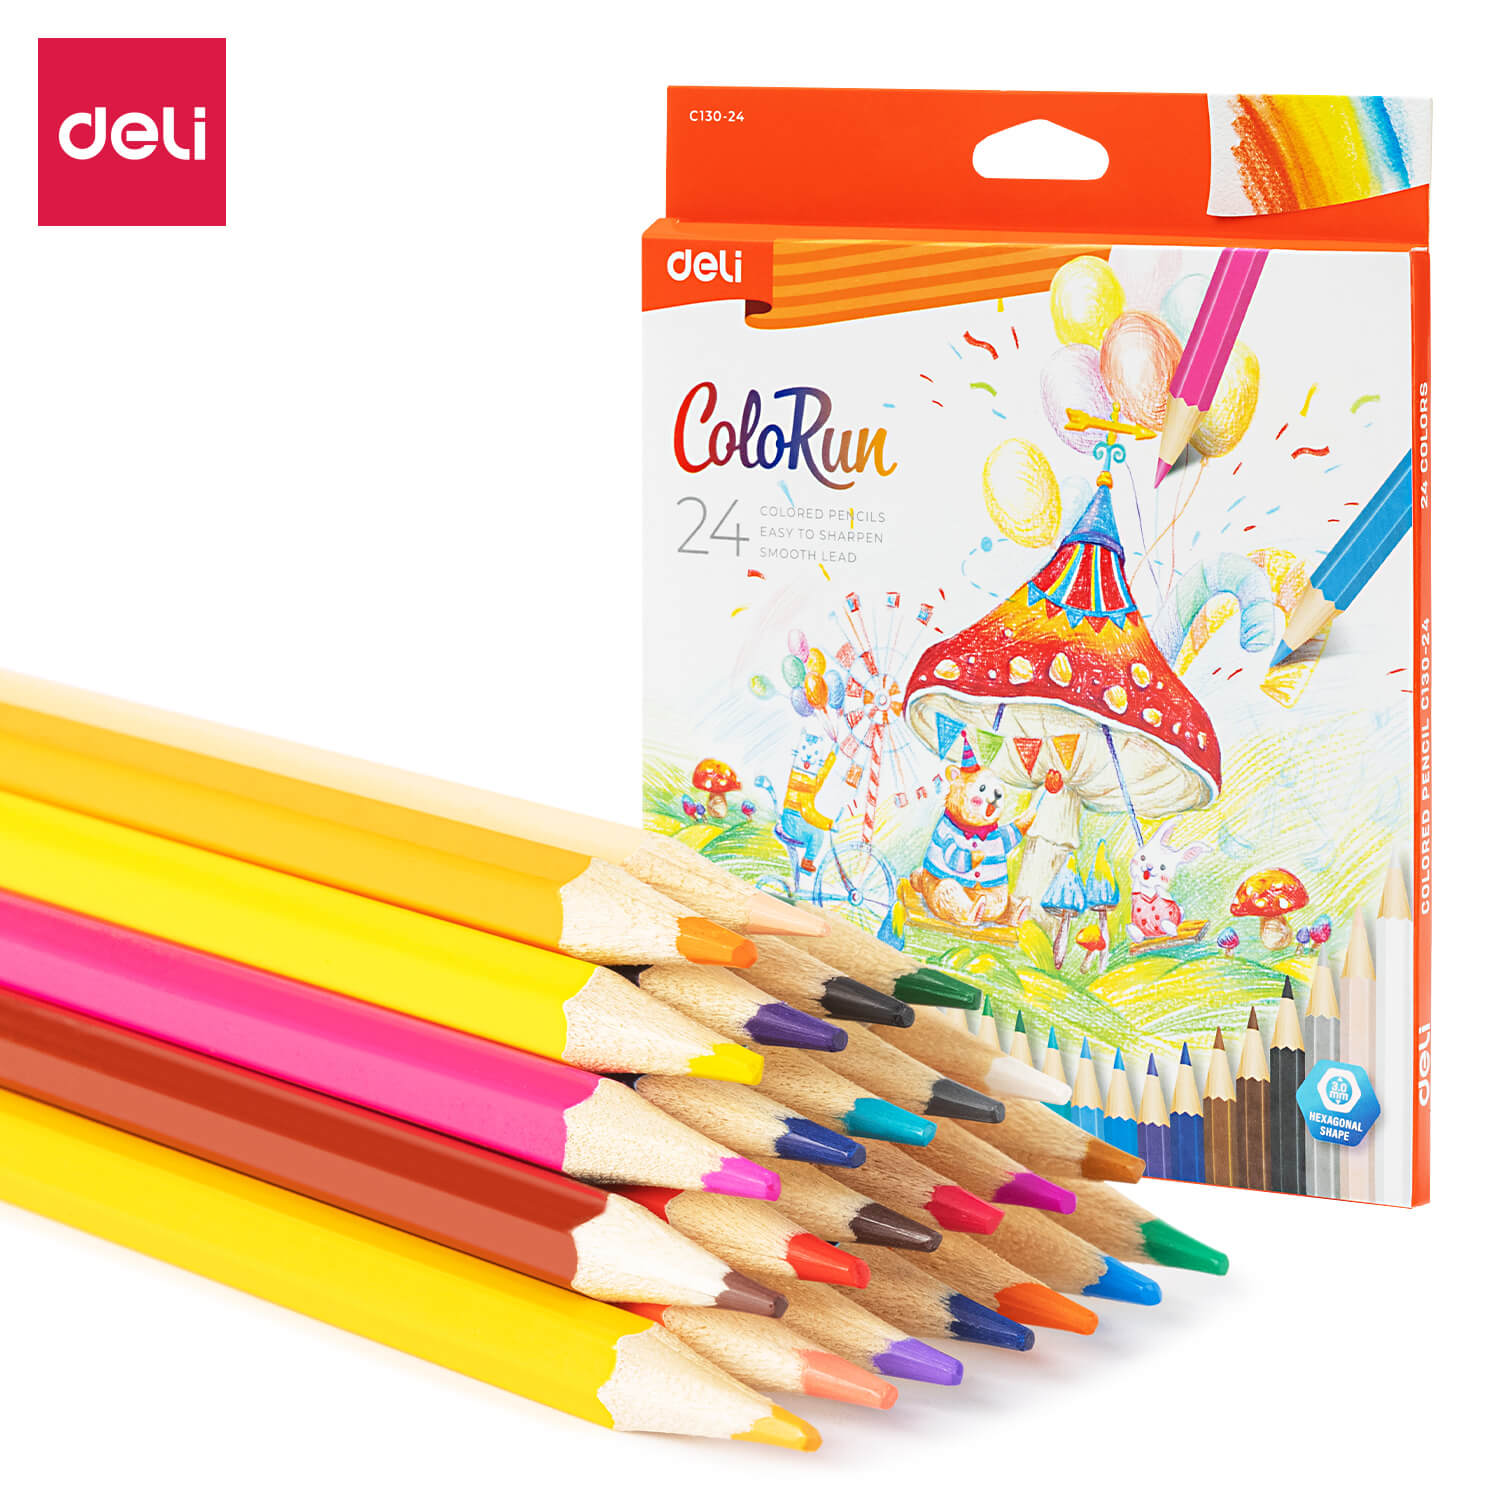 deli ec130 24 colored pencil 1